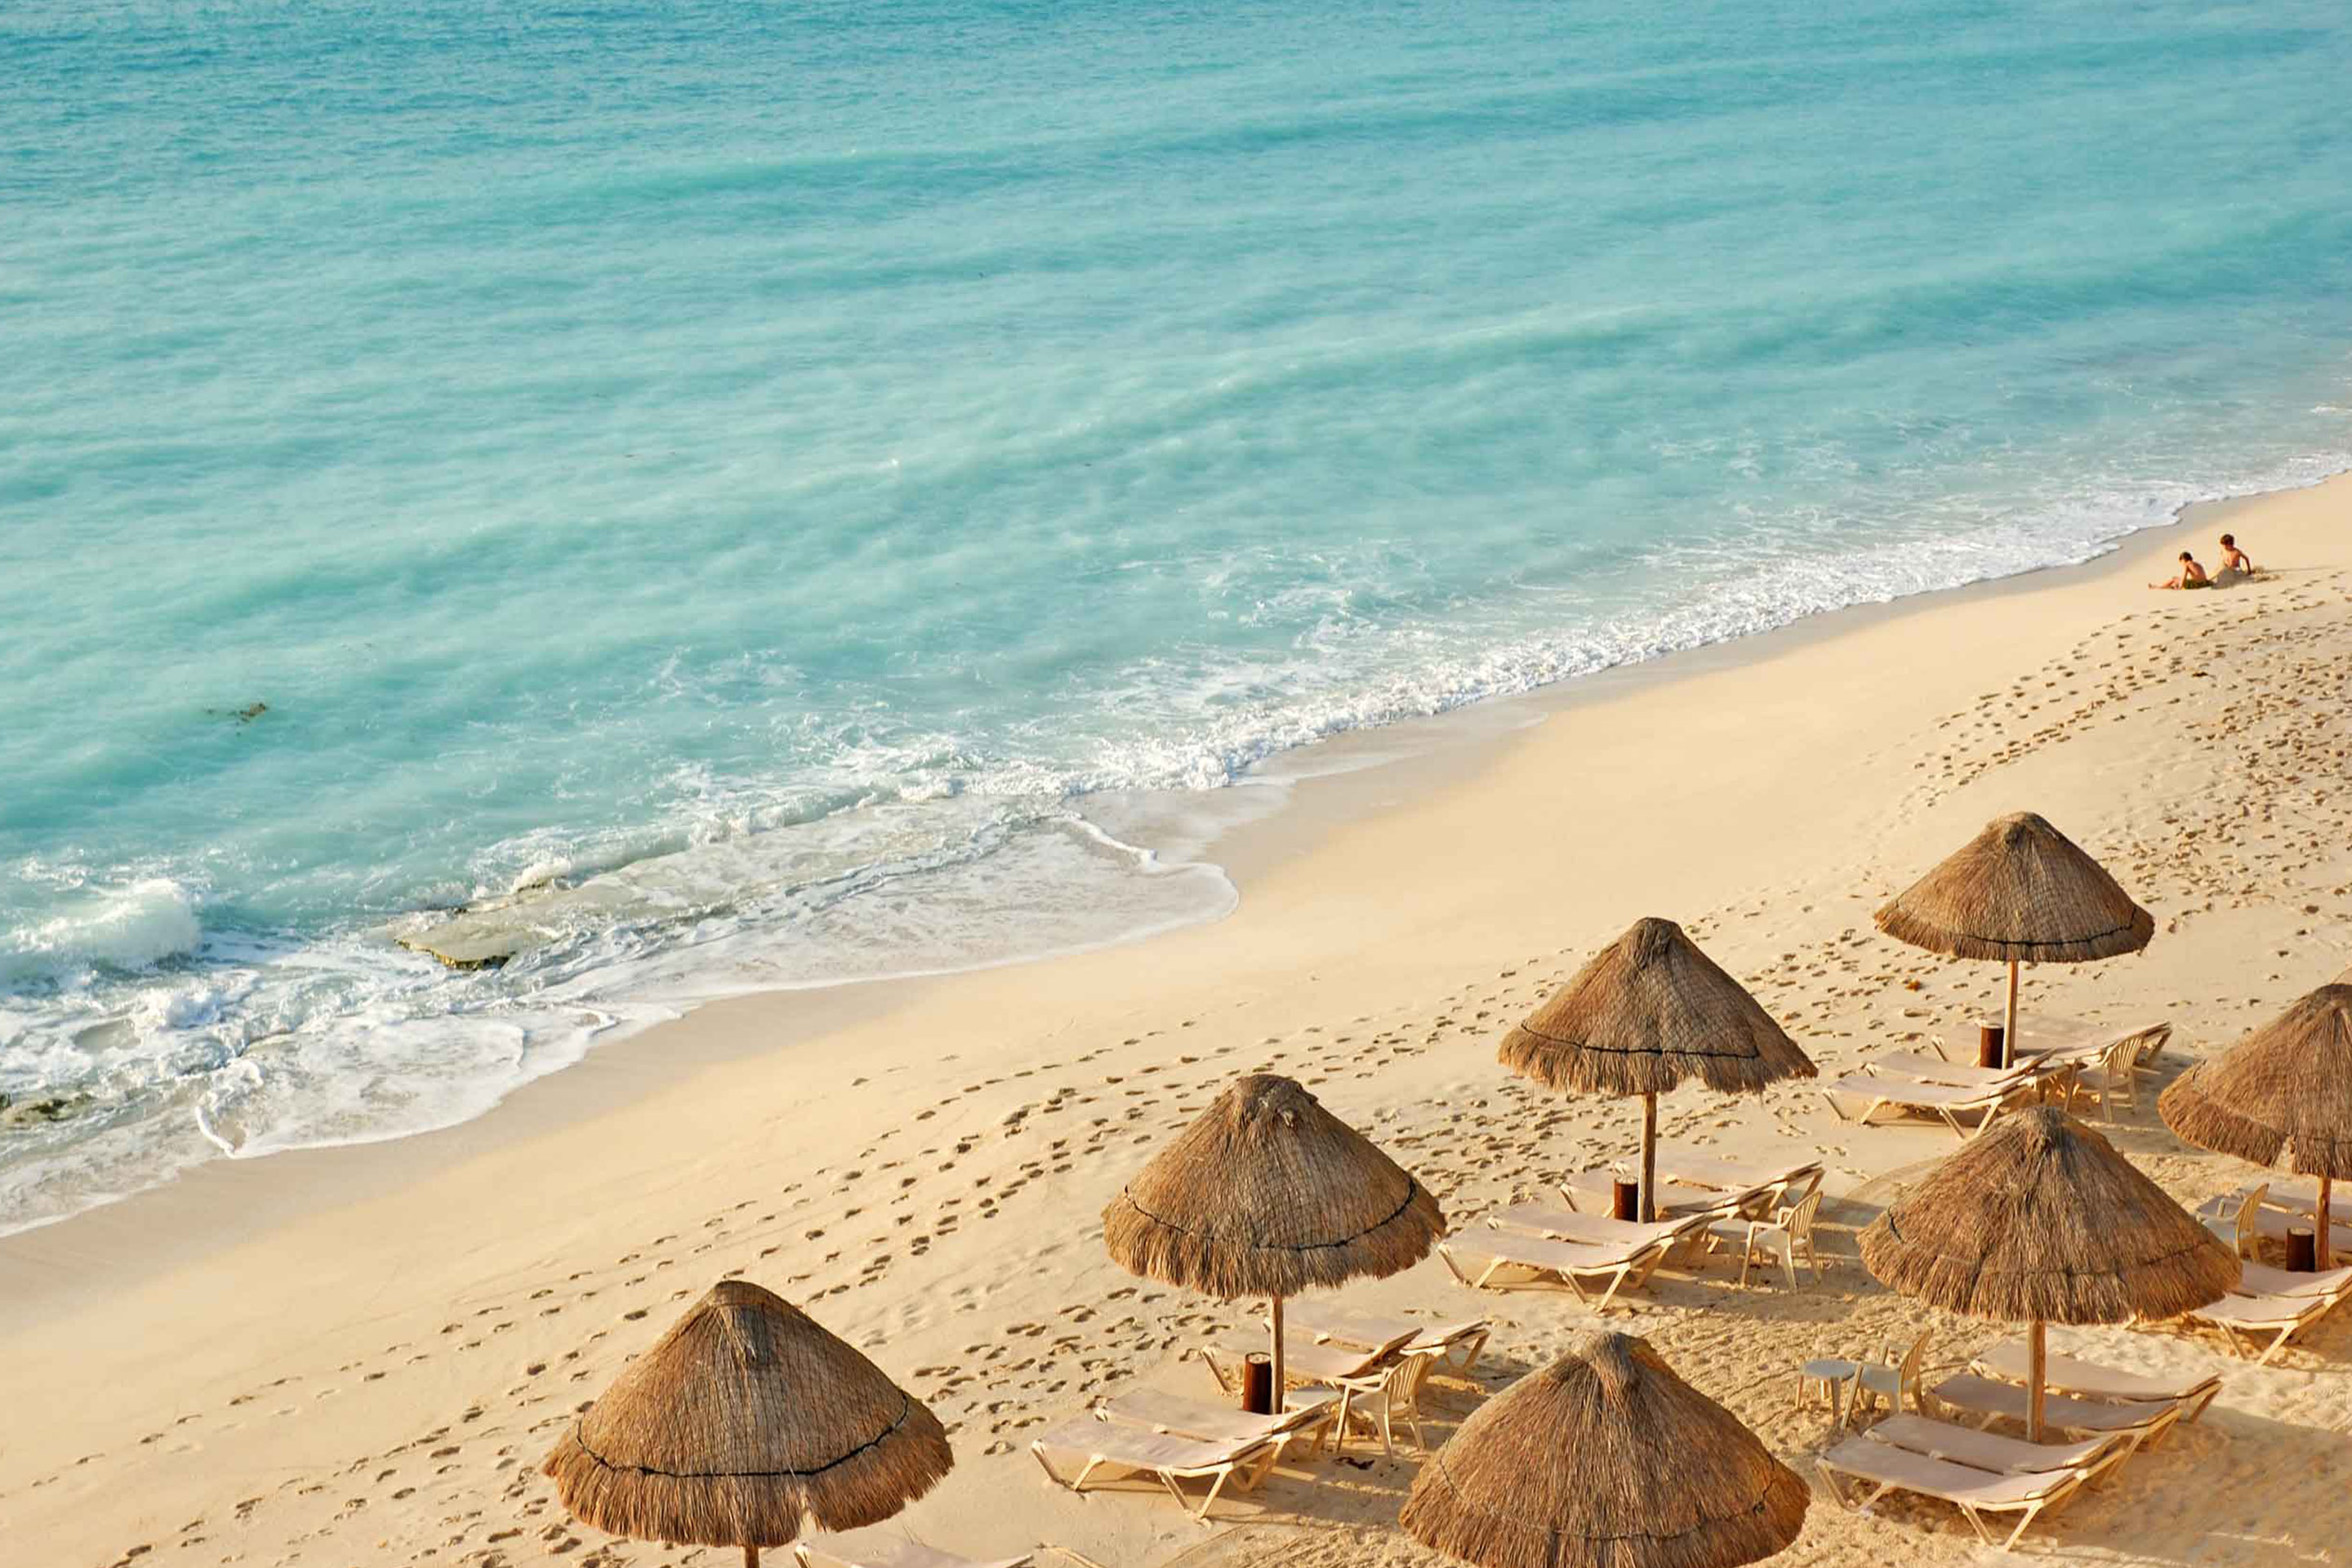 Der Malecon Beach mit Sonnenstühlen und am Ufer aufgereihten Tiki-Hütten, Yucatán (Mexico)